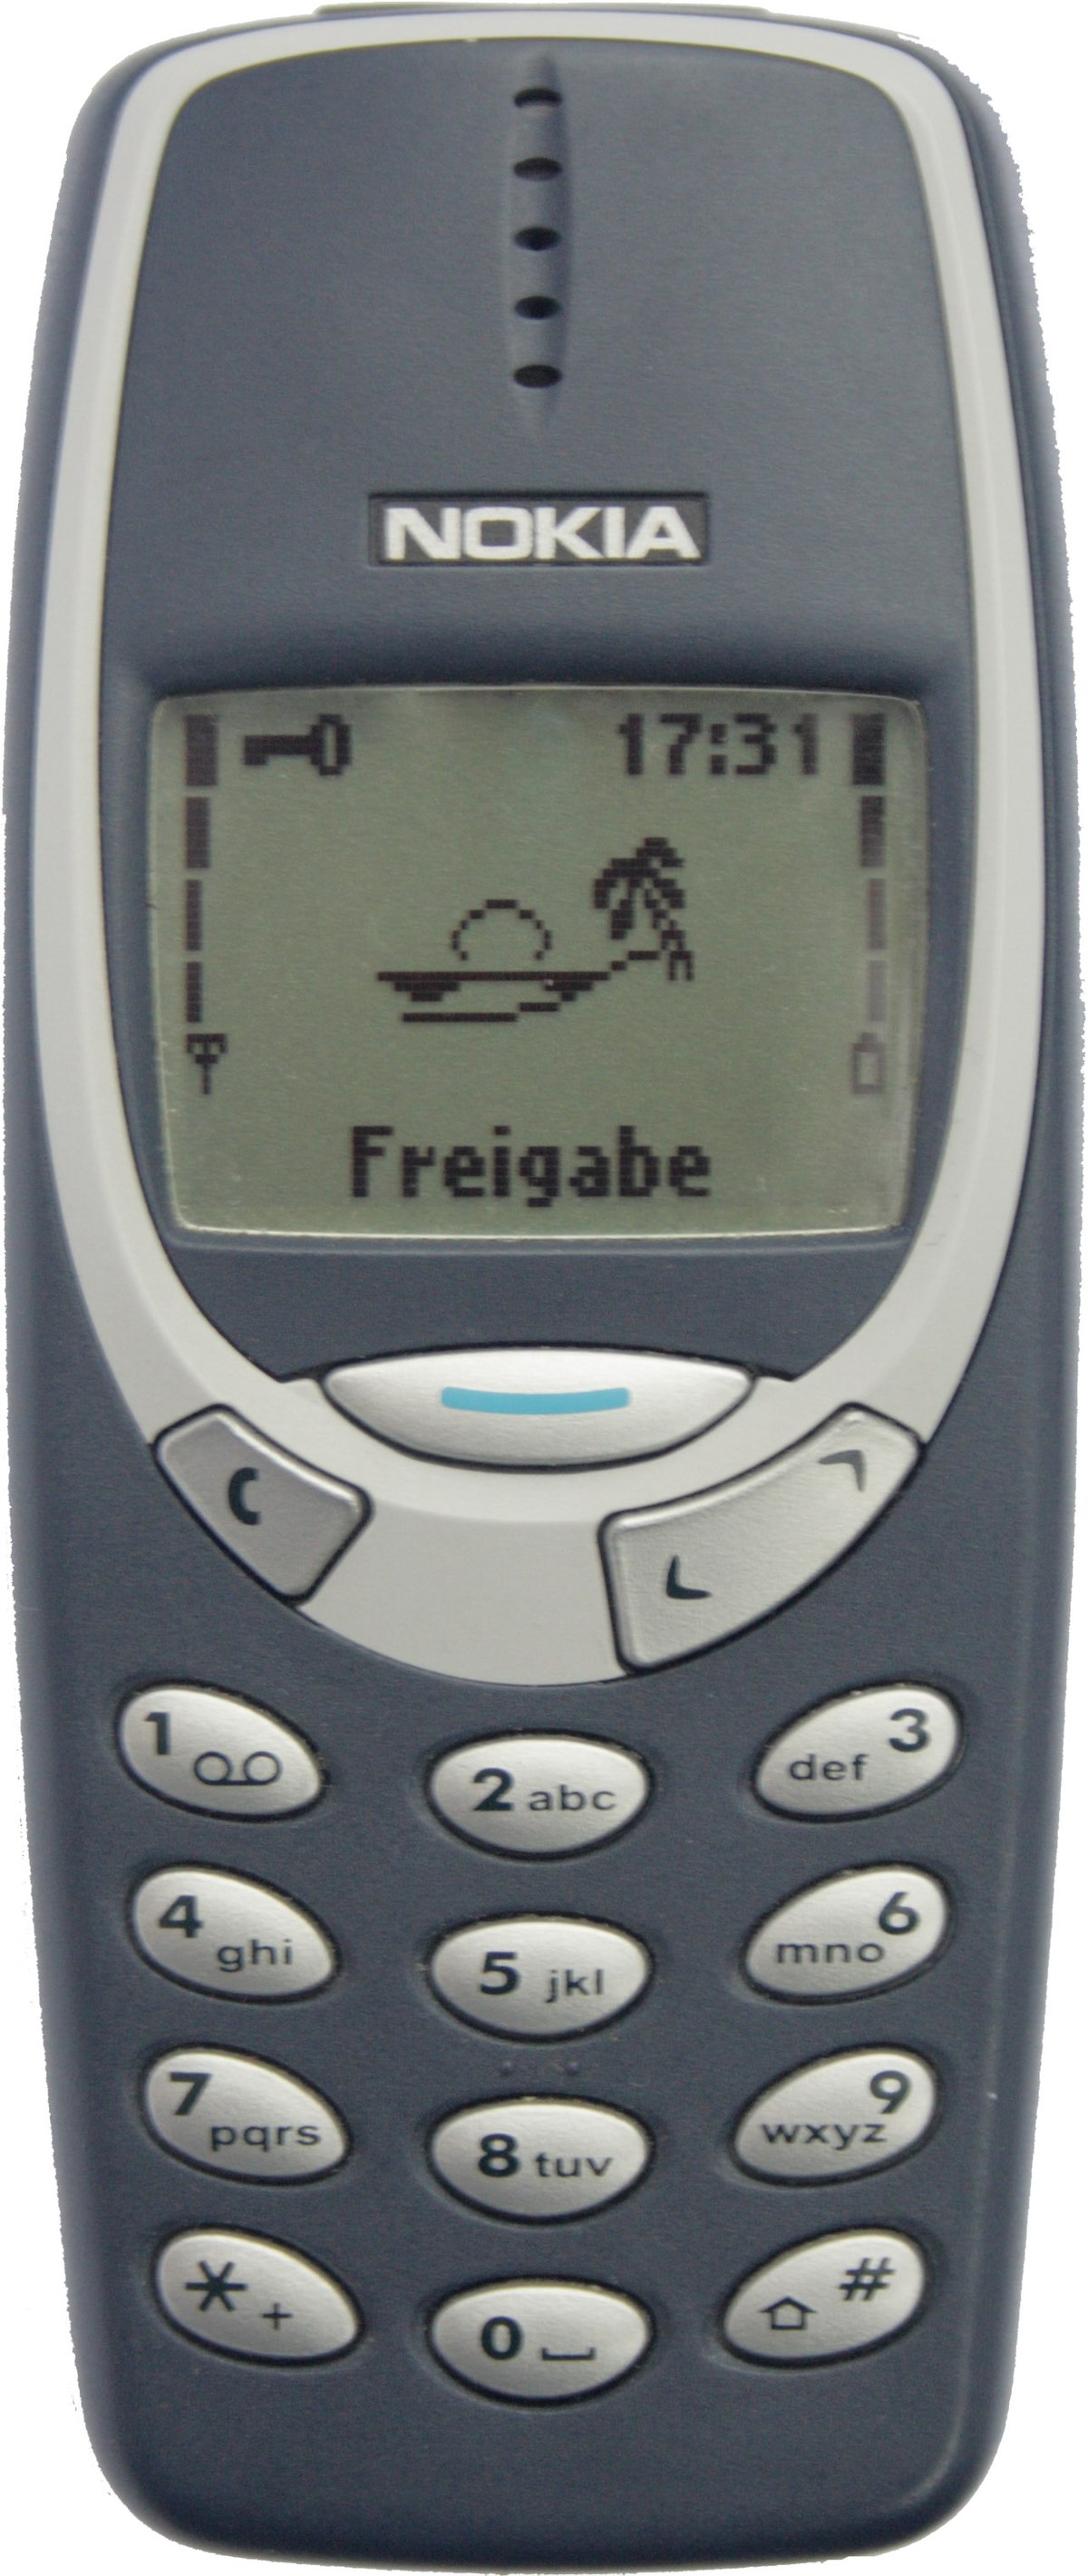 Nokia 3310 Wikipedia